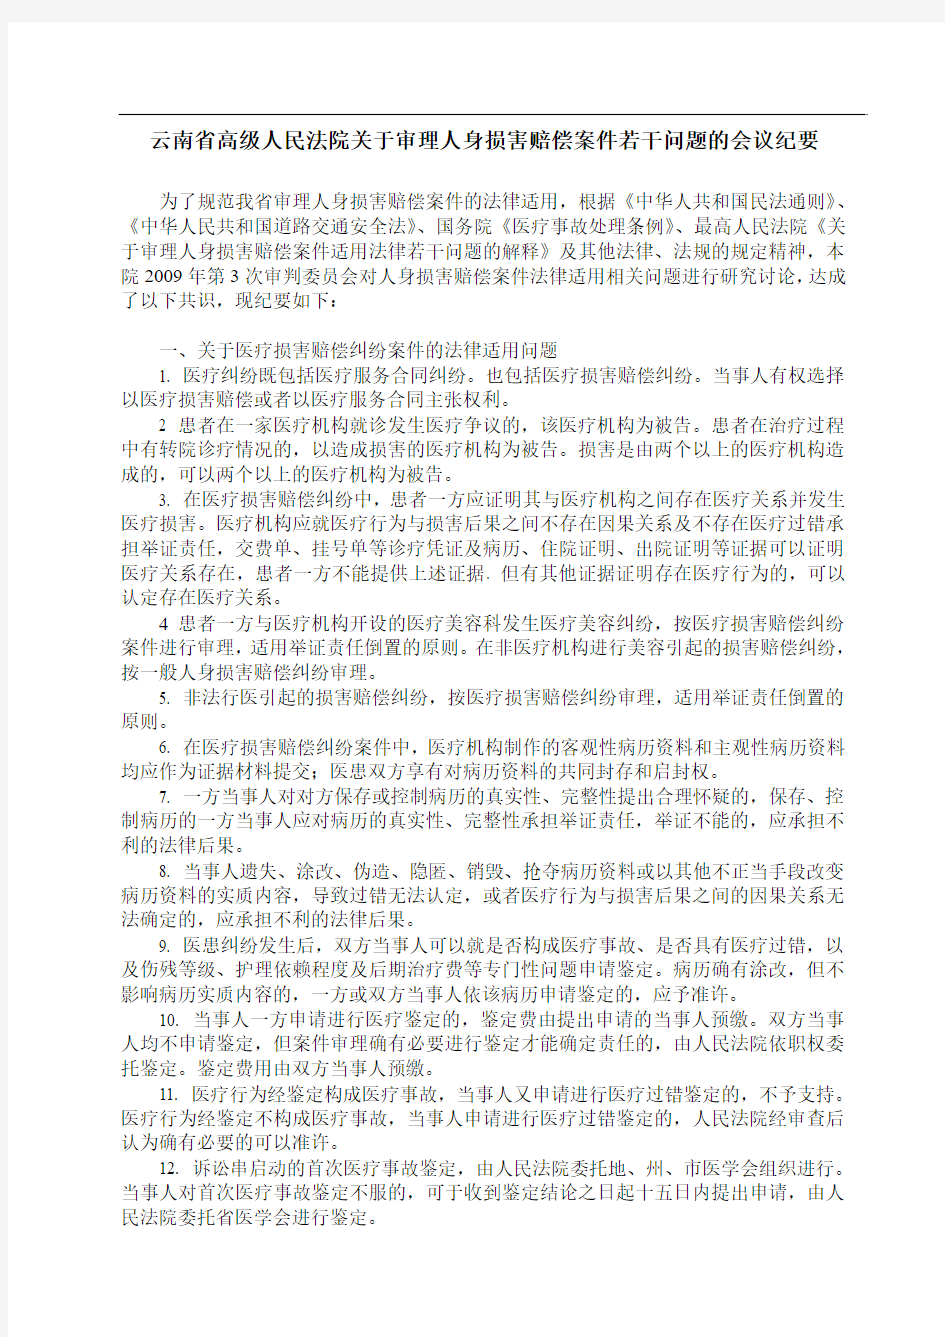 云南省高级人民法院关于审理人身损害赔偿案件若干问题的会议纪要